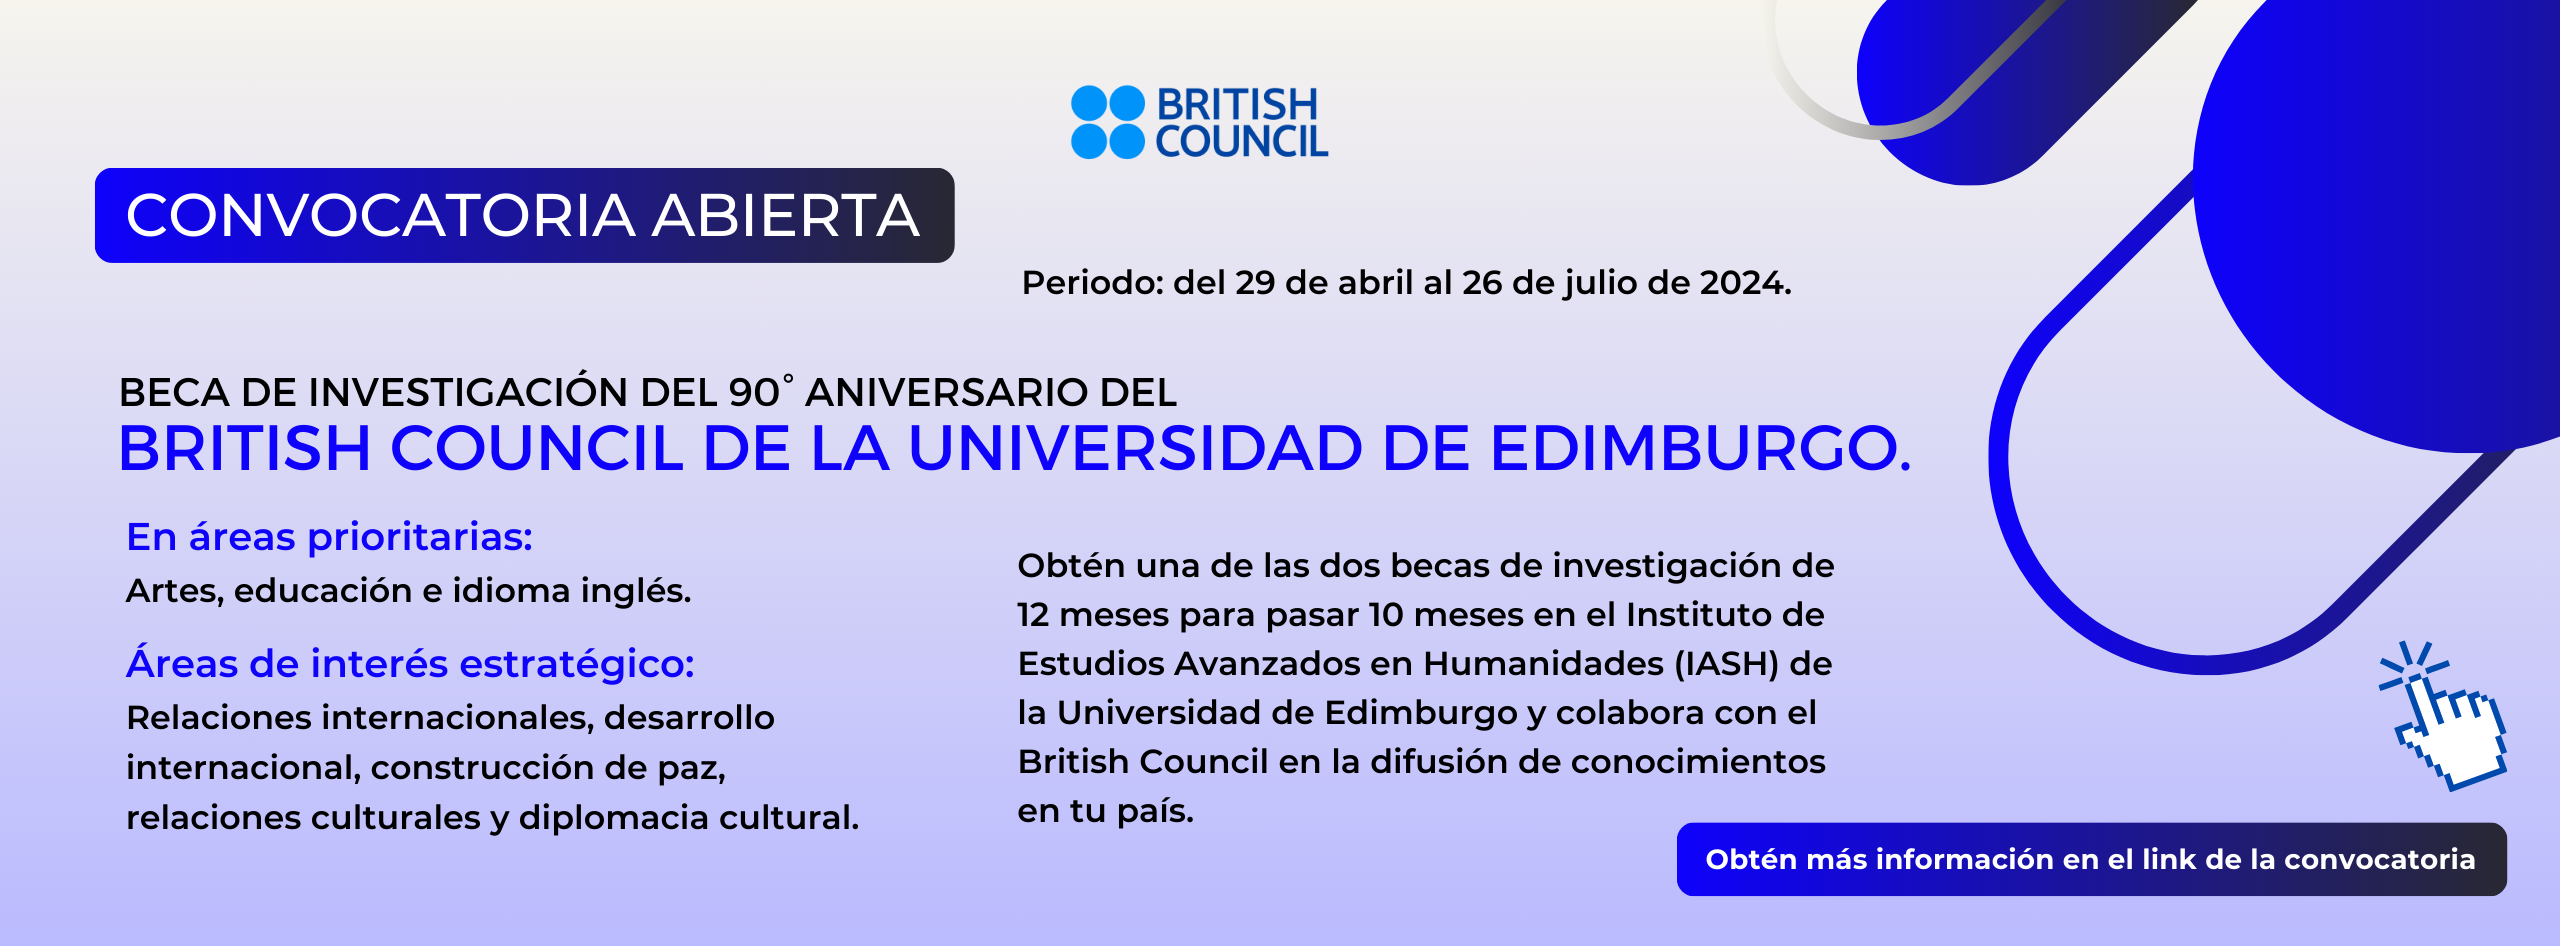 Convocatoria abierta | Beca de investigación del 90° Aniversario del British Council de la Universidad de Edimburgo